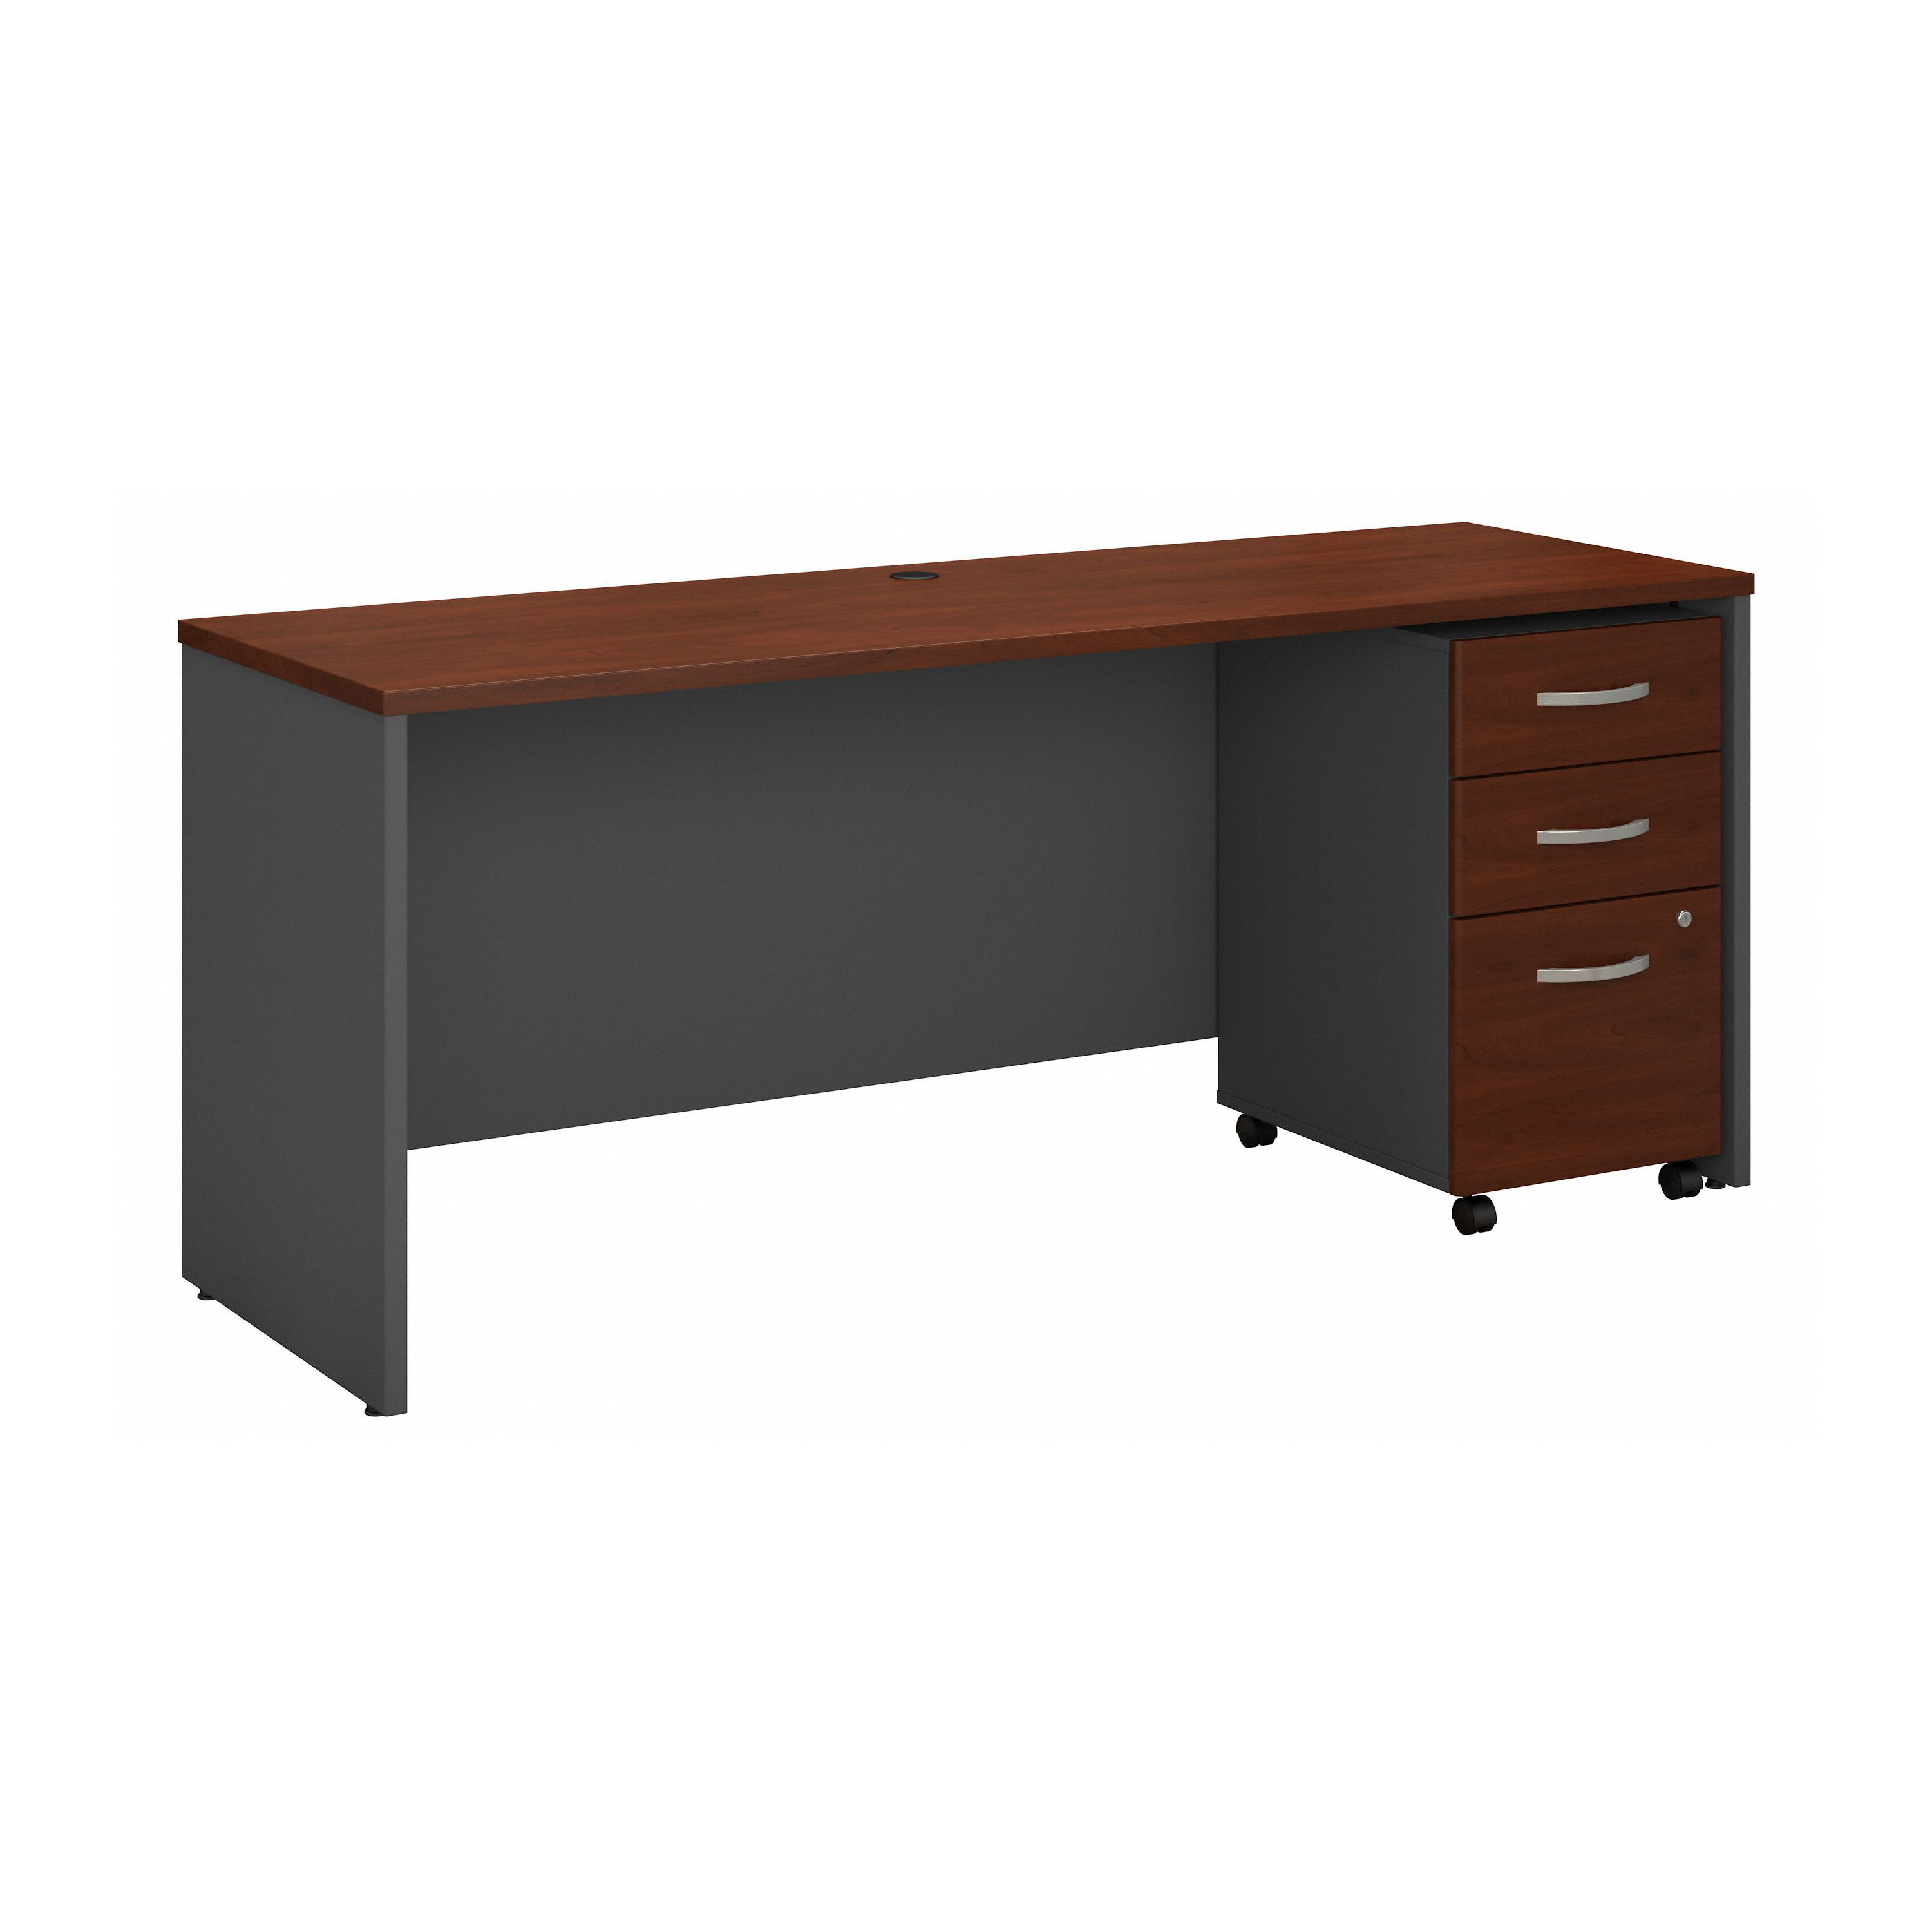 Shop Bush Business Furniture Series C 72W x 24D Office Desk with Mobile File Cabinet 02 SRC026HCSU #color_hansen cherry